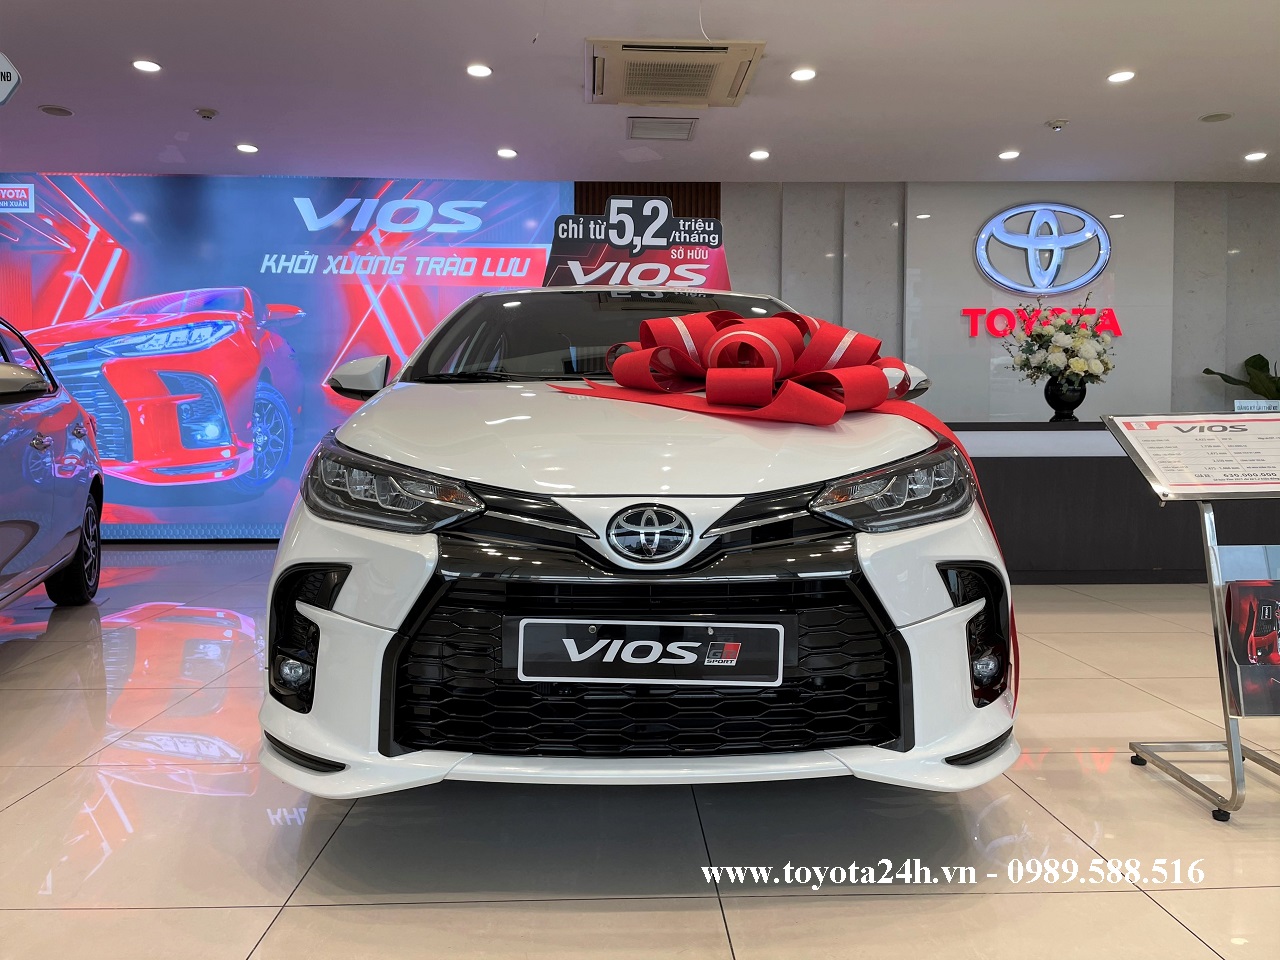 Toyota Vios 1.5GR-S 2022 Màu Trắng Ngọc Trai | Bảng Giá Xe | Hình ...